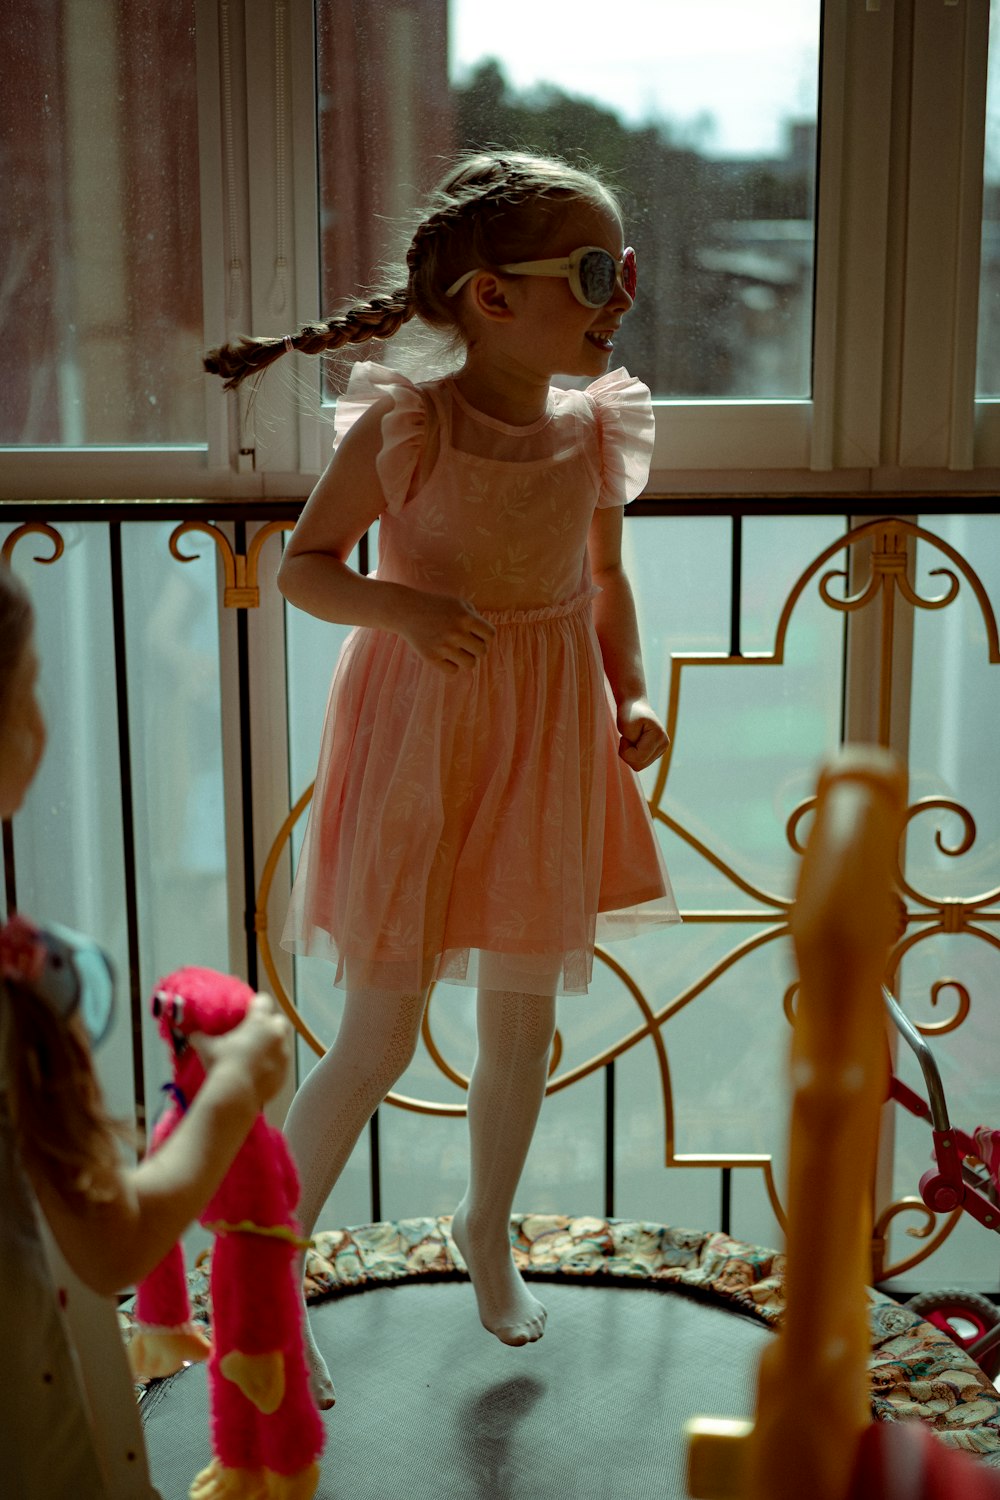 분홍색 드레스를 입은 어린 소녀가 창가에 서 있다